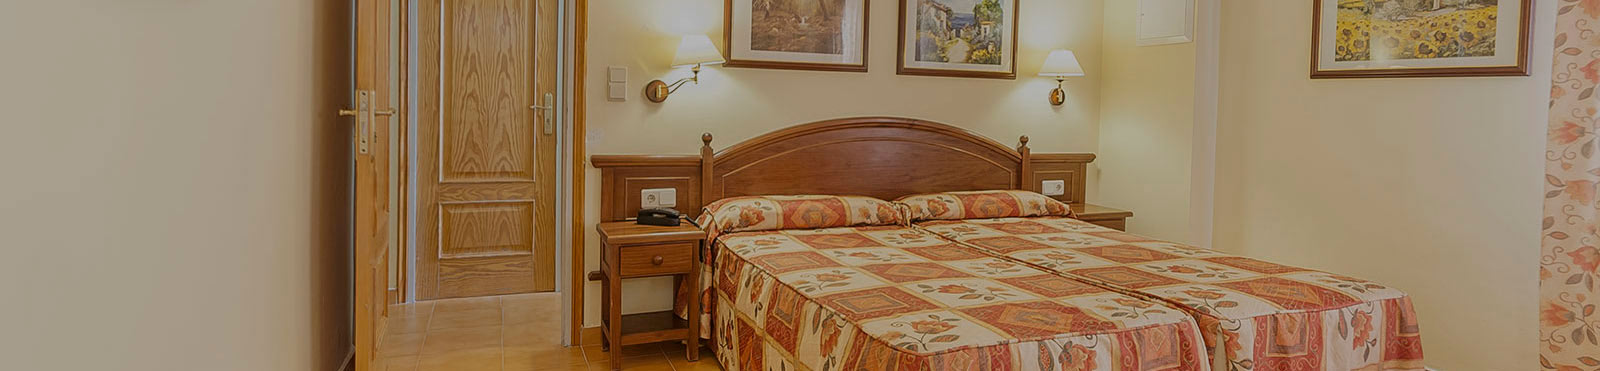 Отель Монтеркало Андорра: Ваш дешевый семейный отель в Энкампе